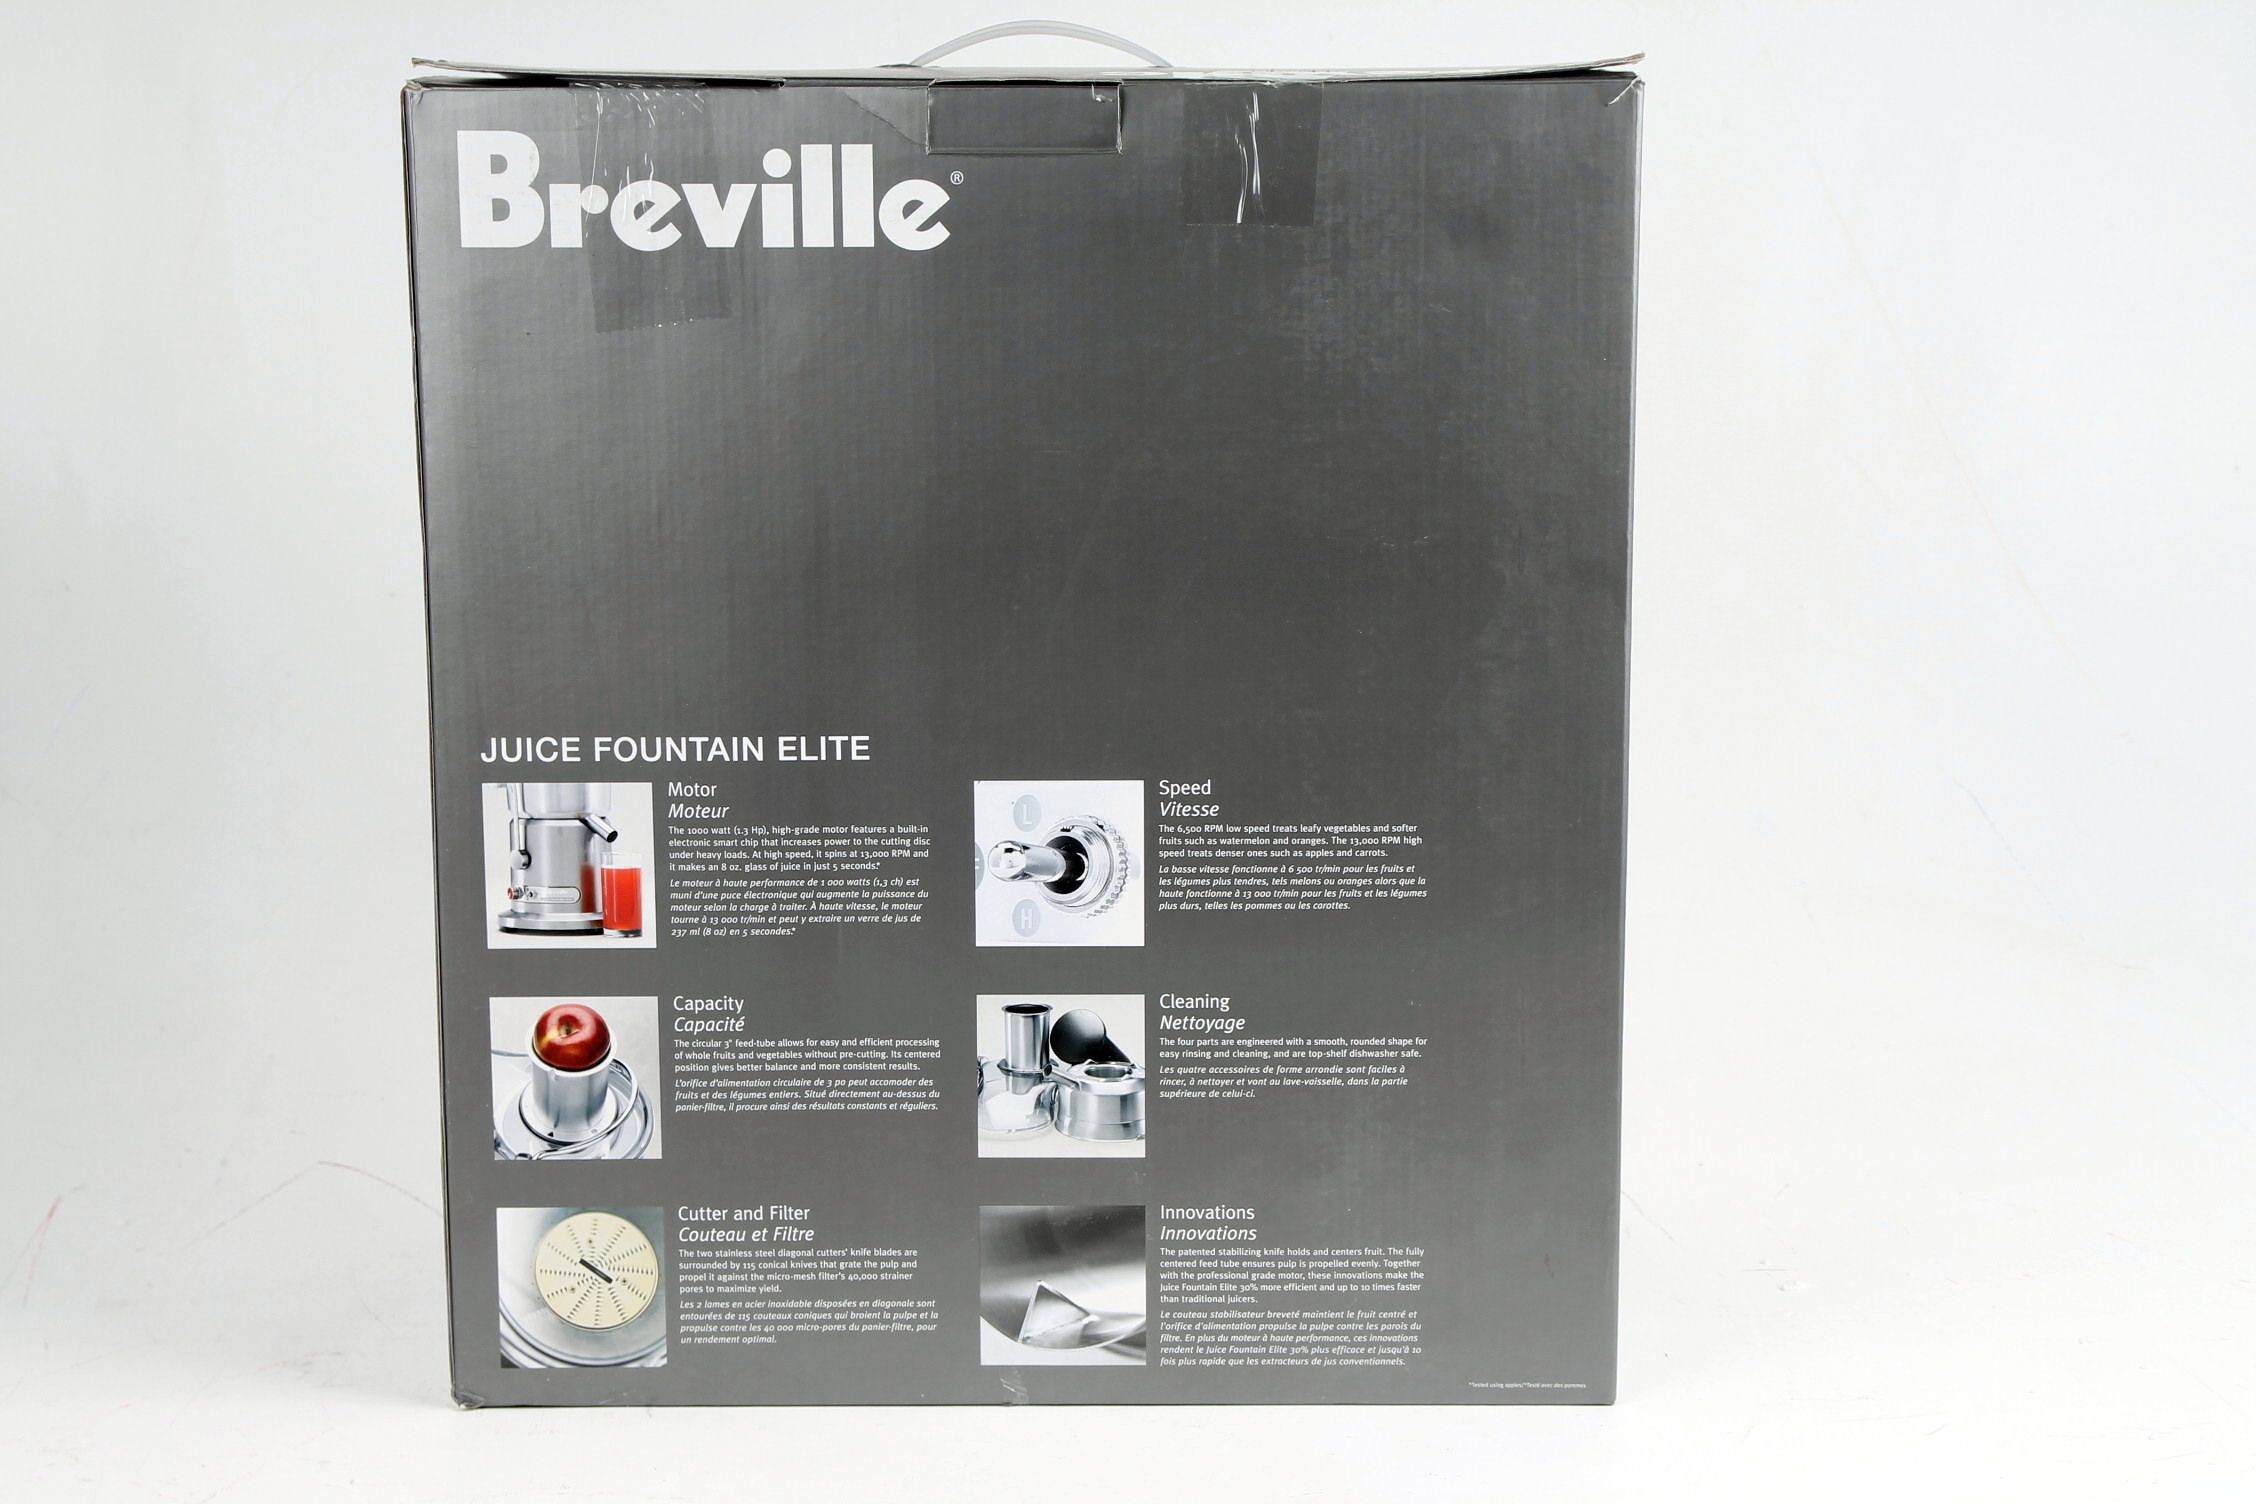 Breville 800JEXL Juice Fountain Elite 1000 Watt Juice Extractor, no